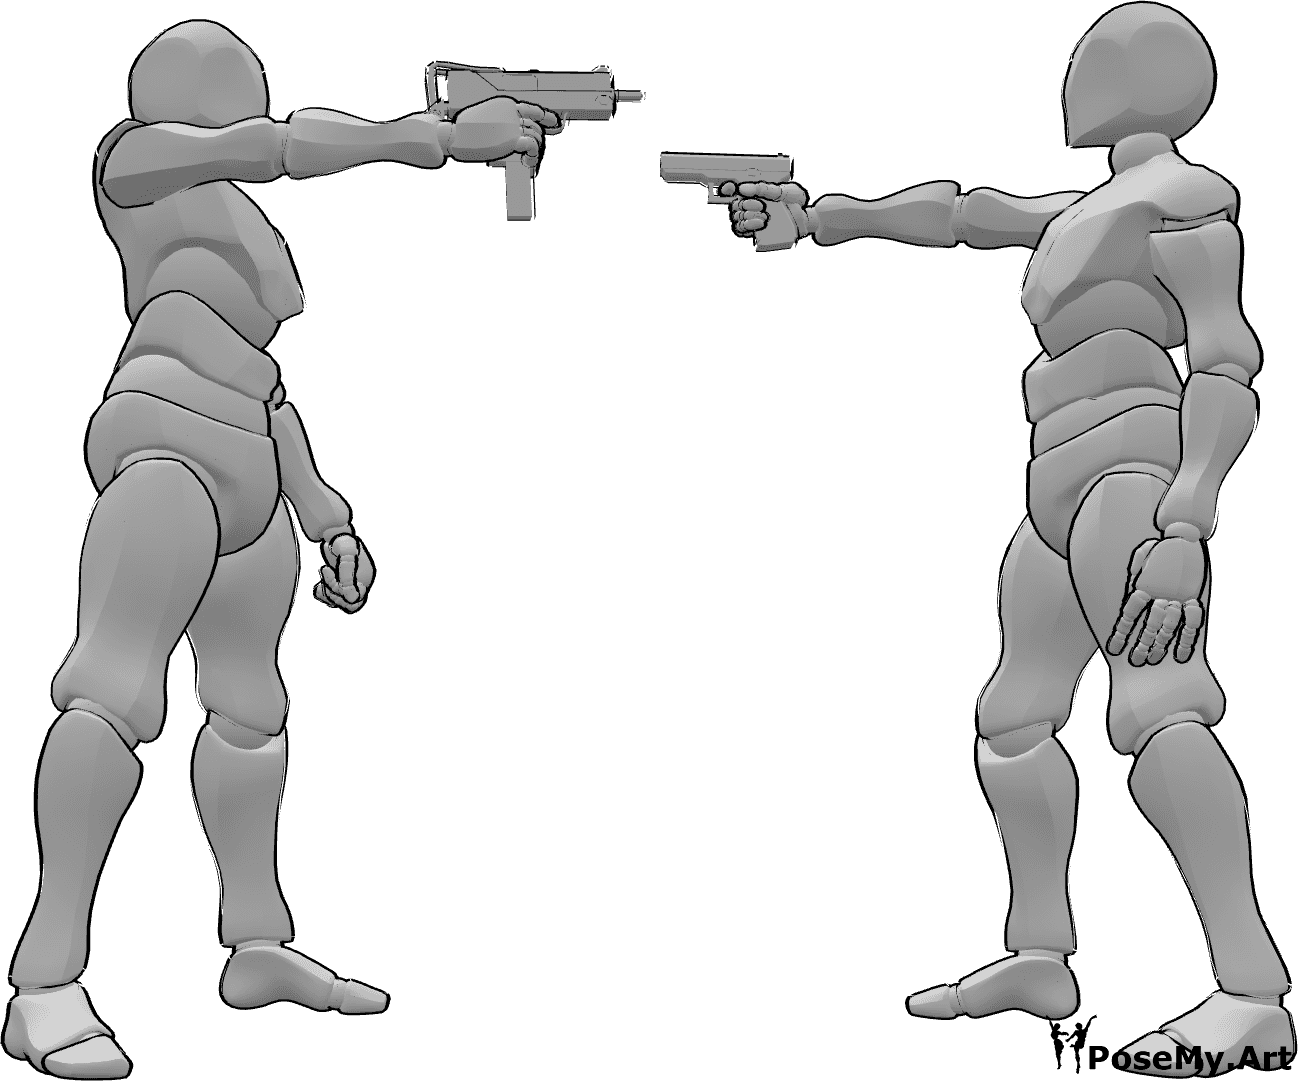 Référence des poses- Les hommes armés posent - Deux hommes pointent leurs armes l'un vers l'autre